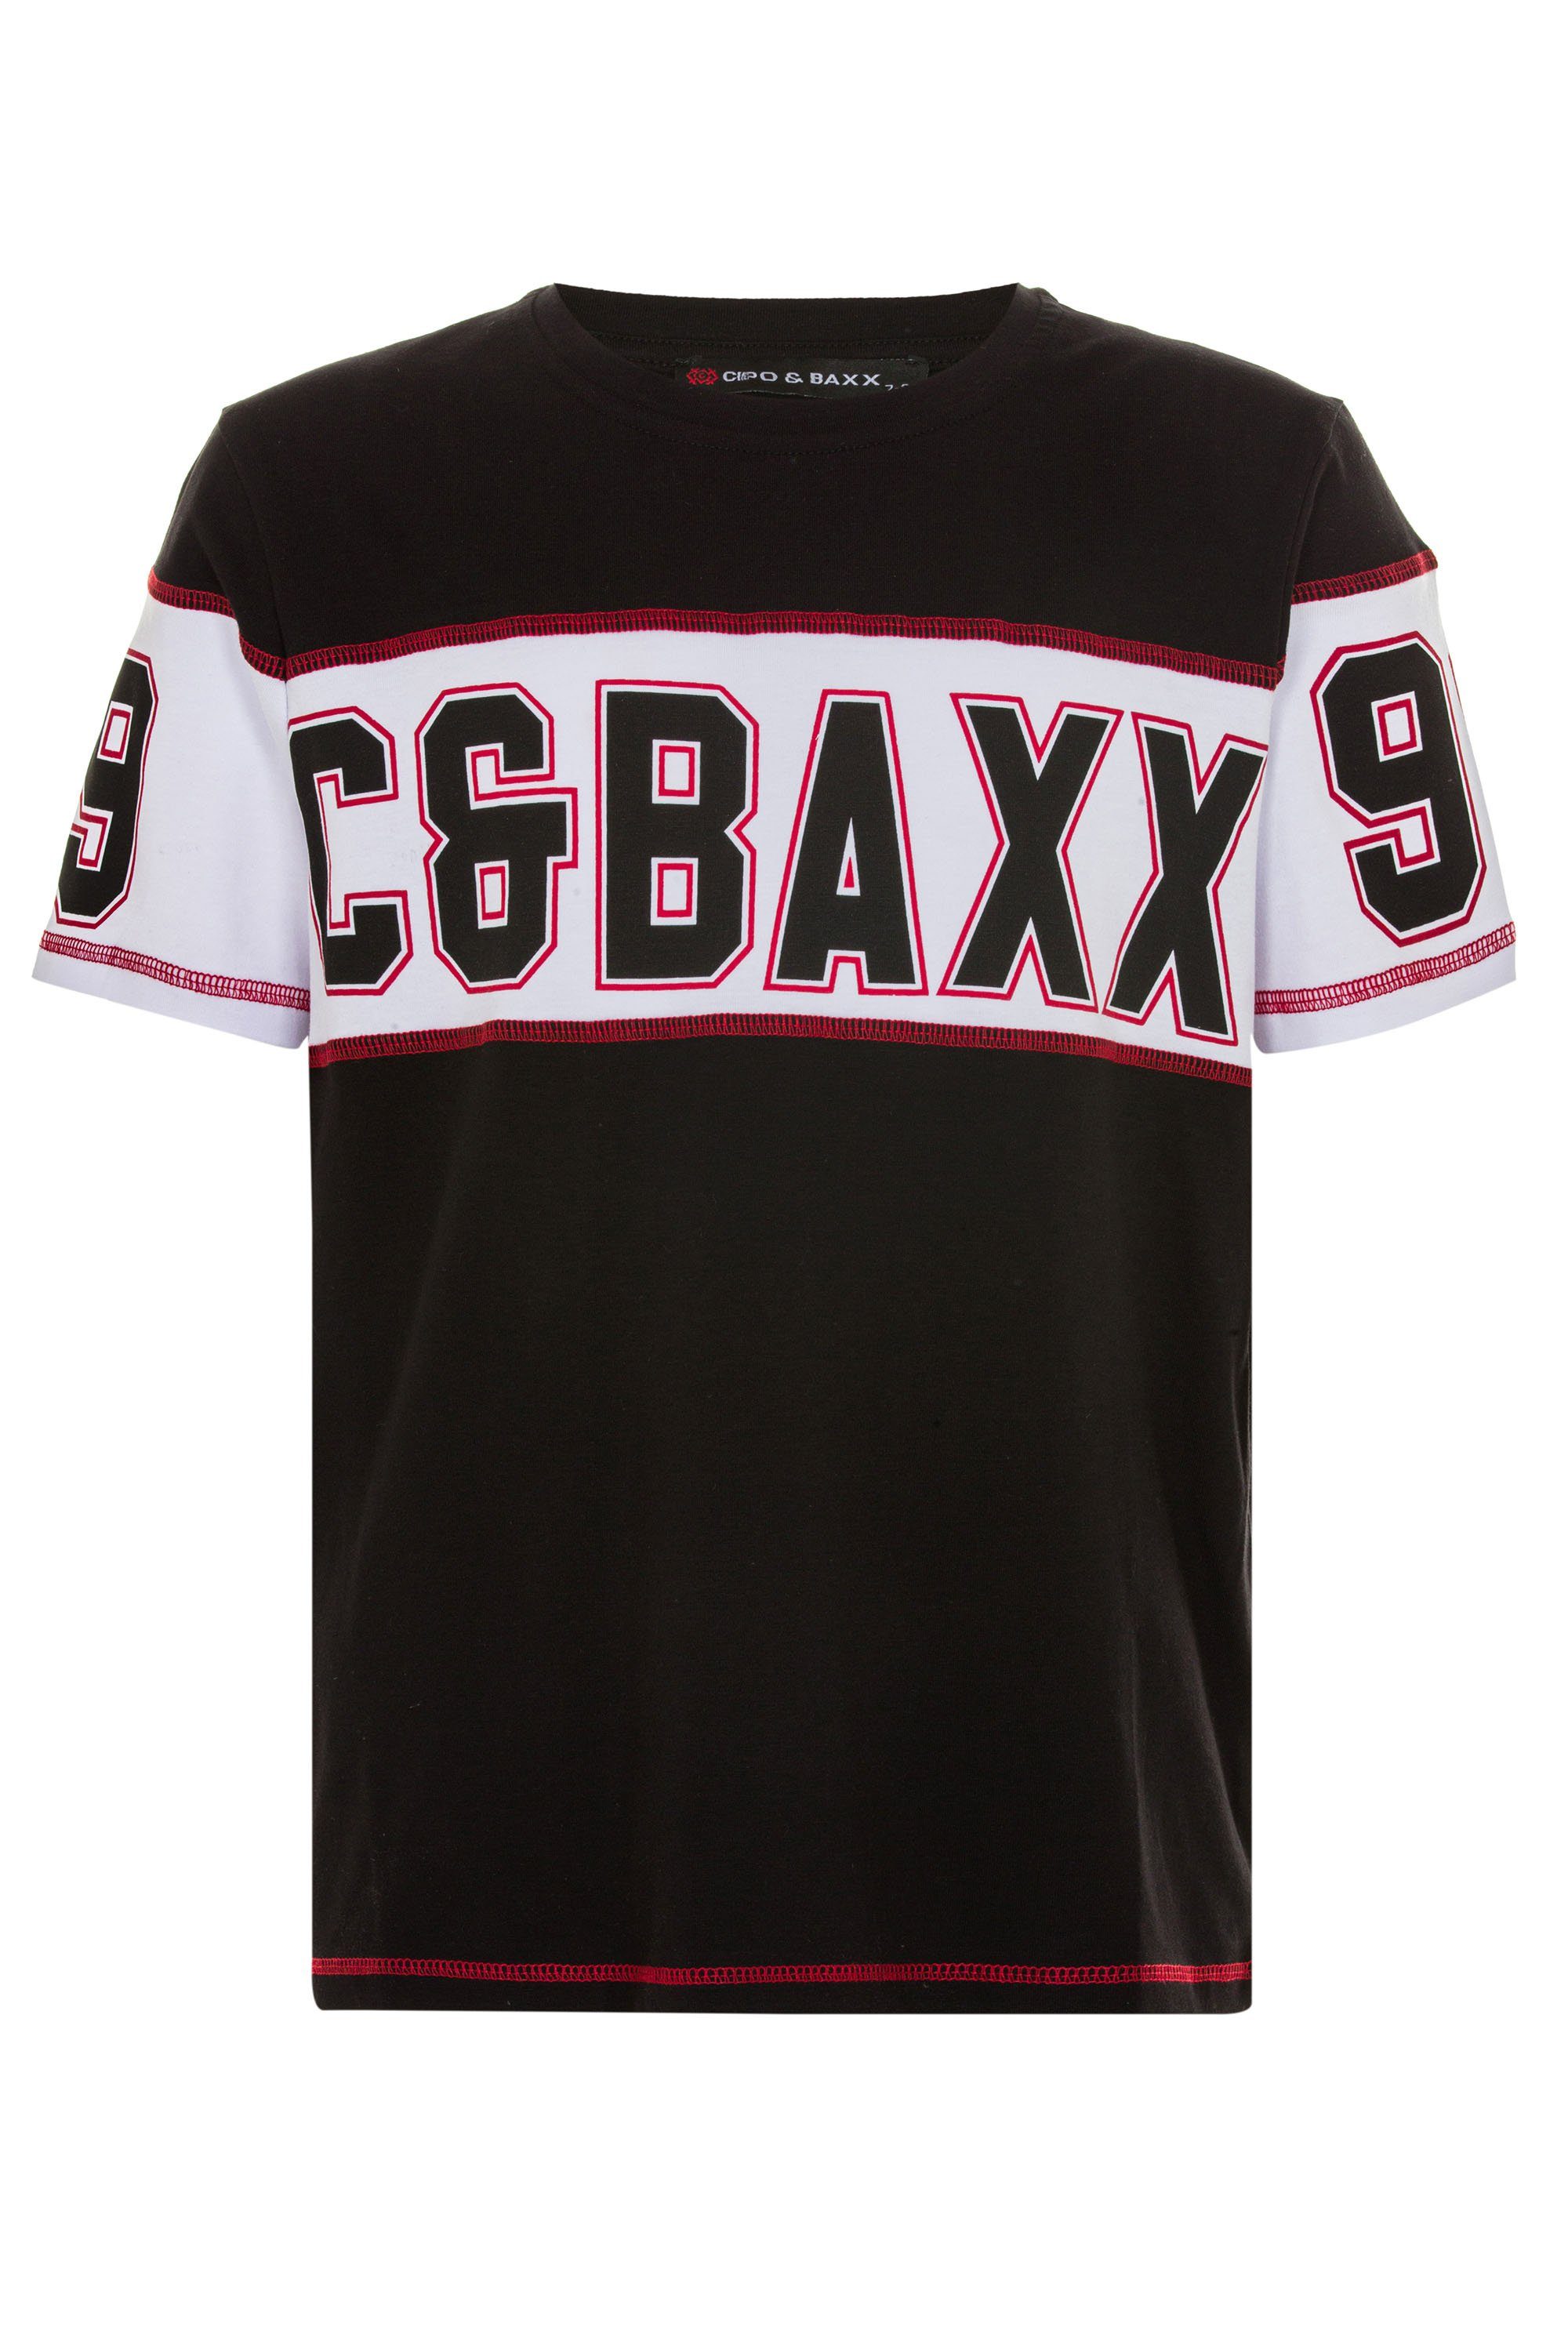 Cipo & Baxx T-Shirt Markenprint mit coolem schwarz